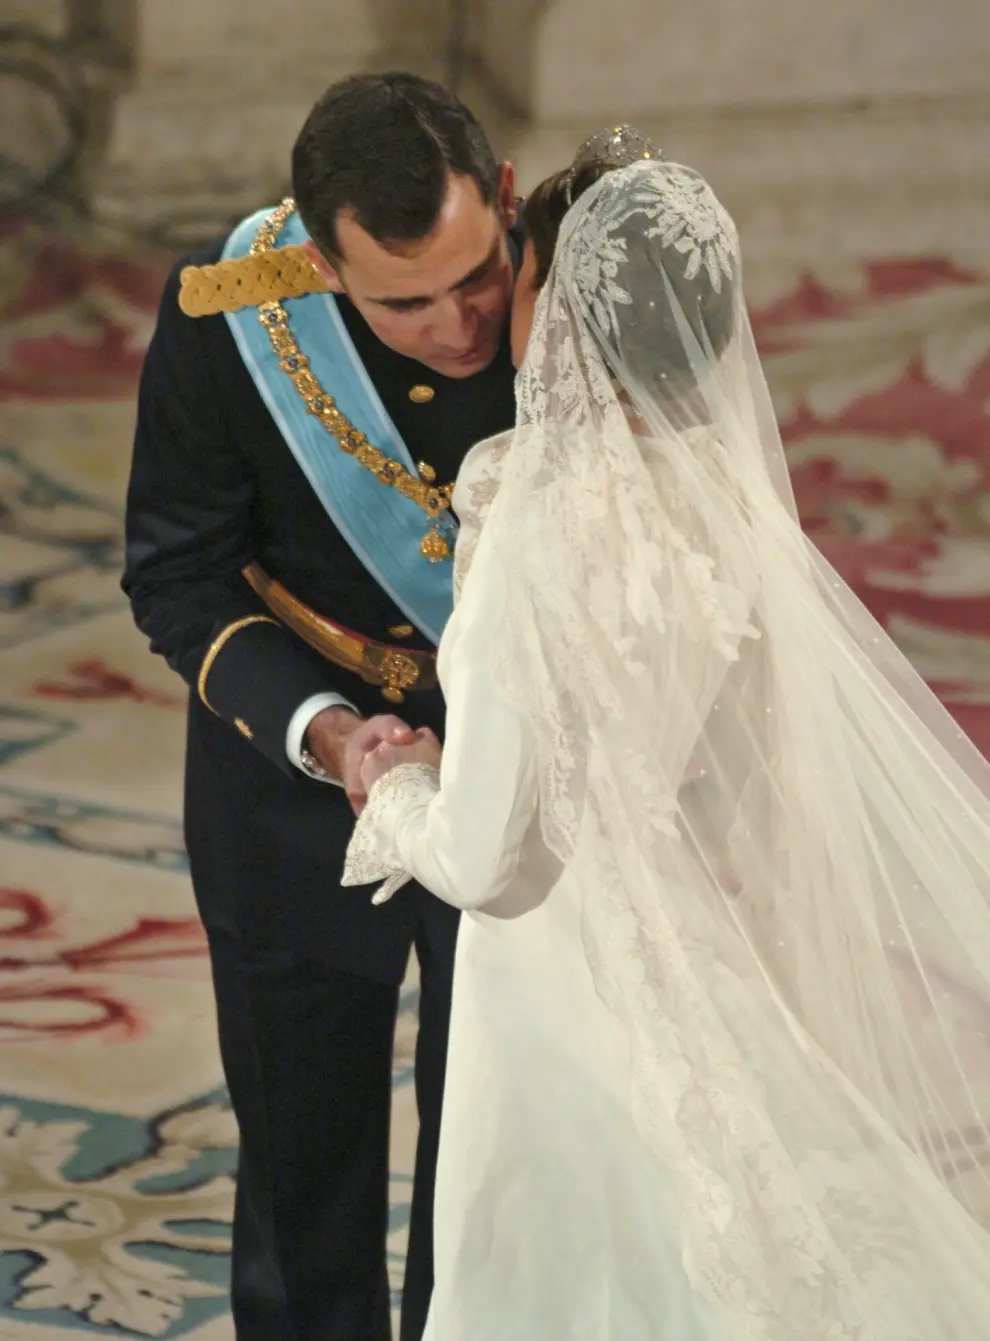 Imágenes de la Boda Real del entonces Príncipe Felipe y doña Letizia en 2004.